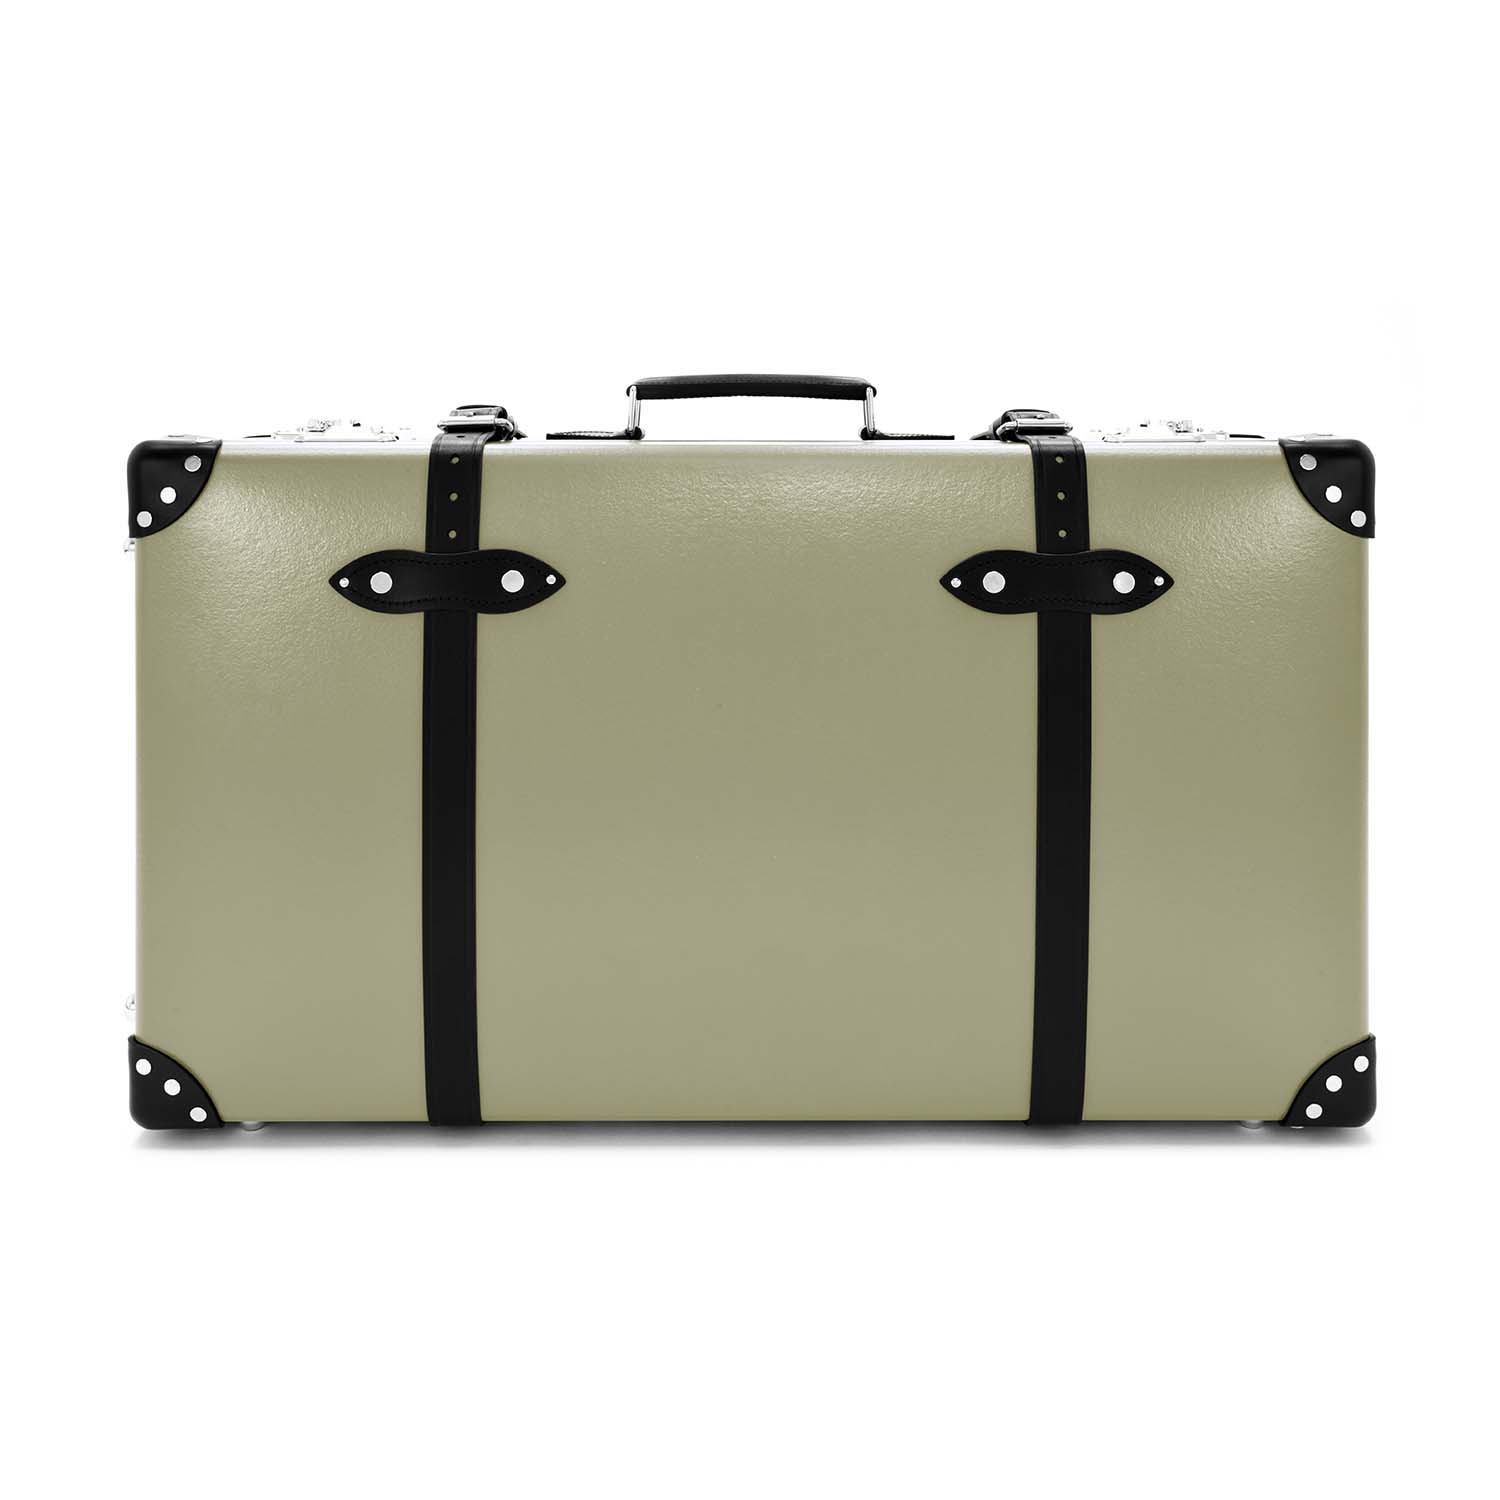 センテナリー · ラージスーツケース | オリーブ/ブラック/クロム